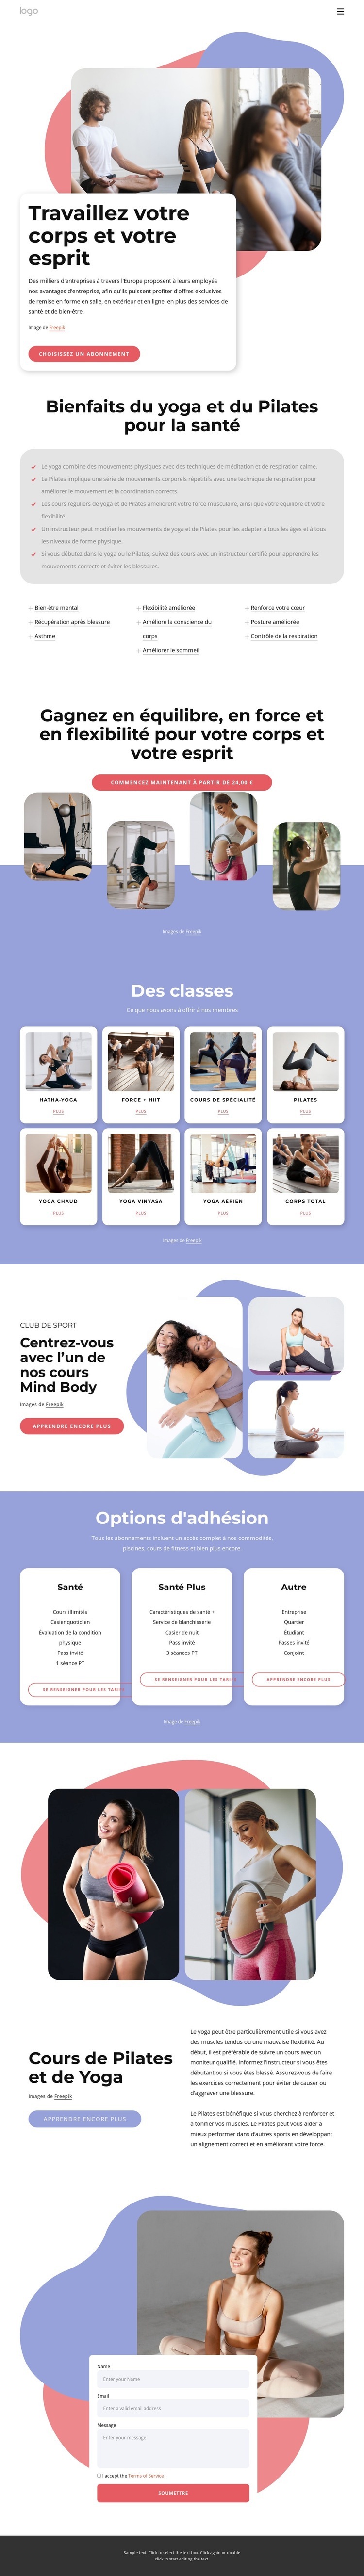 Cours de Pilates et de yoga Maquette de site Web